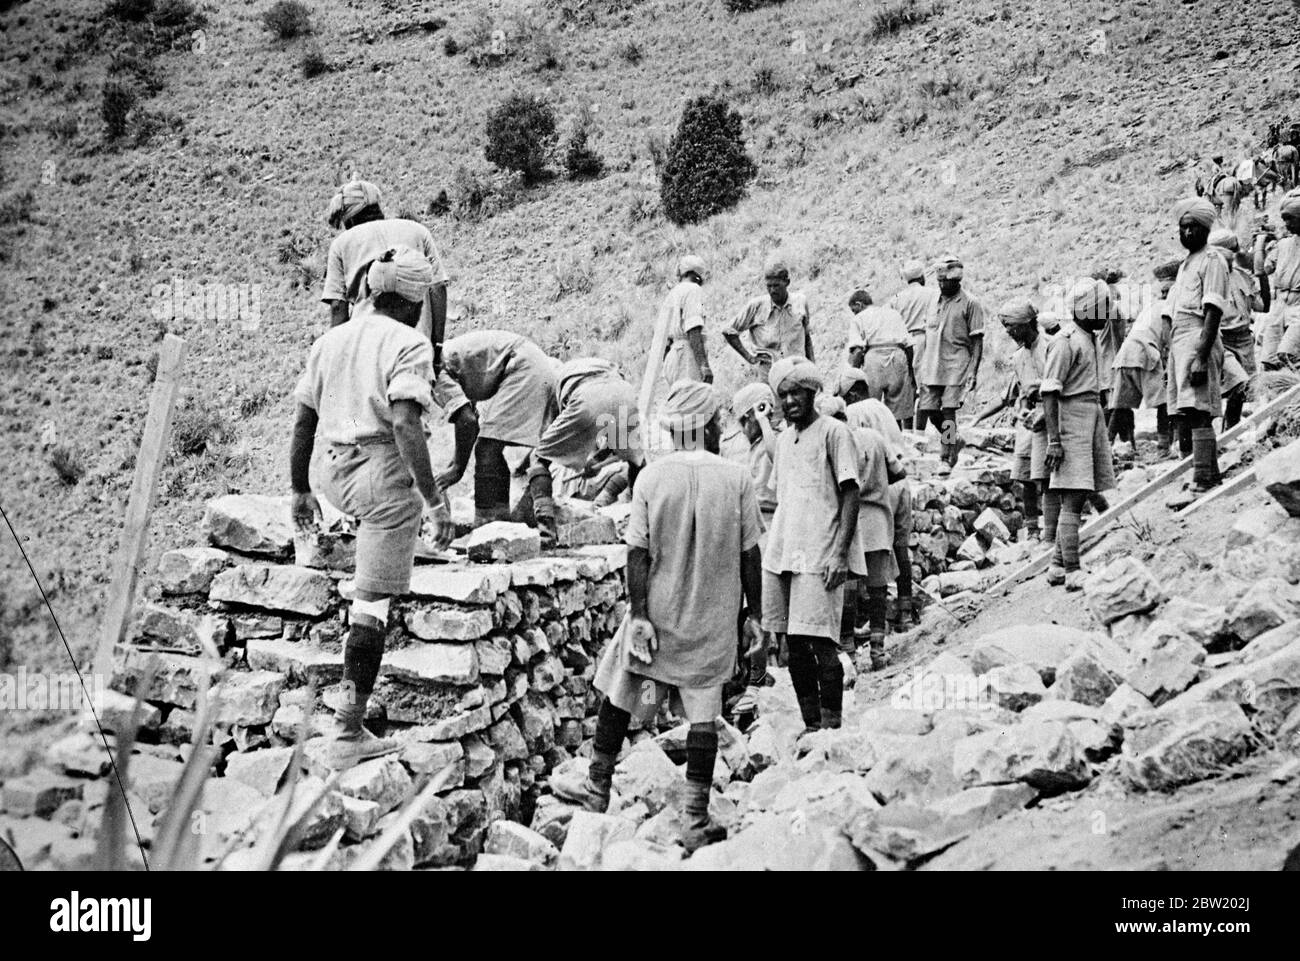 Britische Streitkräfte festigen jetzt ihre Position an der Nordwestgrenze Indiens, wo sie eine große Kampagne gegen rebellische Stammesangehörigen geführt hatten, die durch den schwer fassbaren Fakir der IPI erstickt wurden. Britische indische Truppen bauen Steinverteidigung, um ihre Position auf der Straße von Dosalli nach Ghariom zu stärken. 19 Juli 1937 Stockfoto